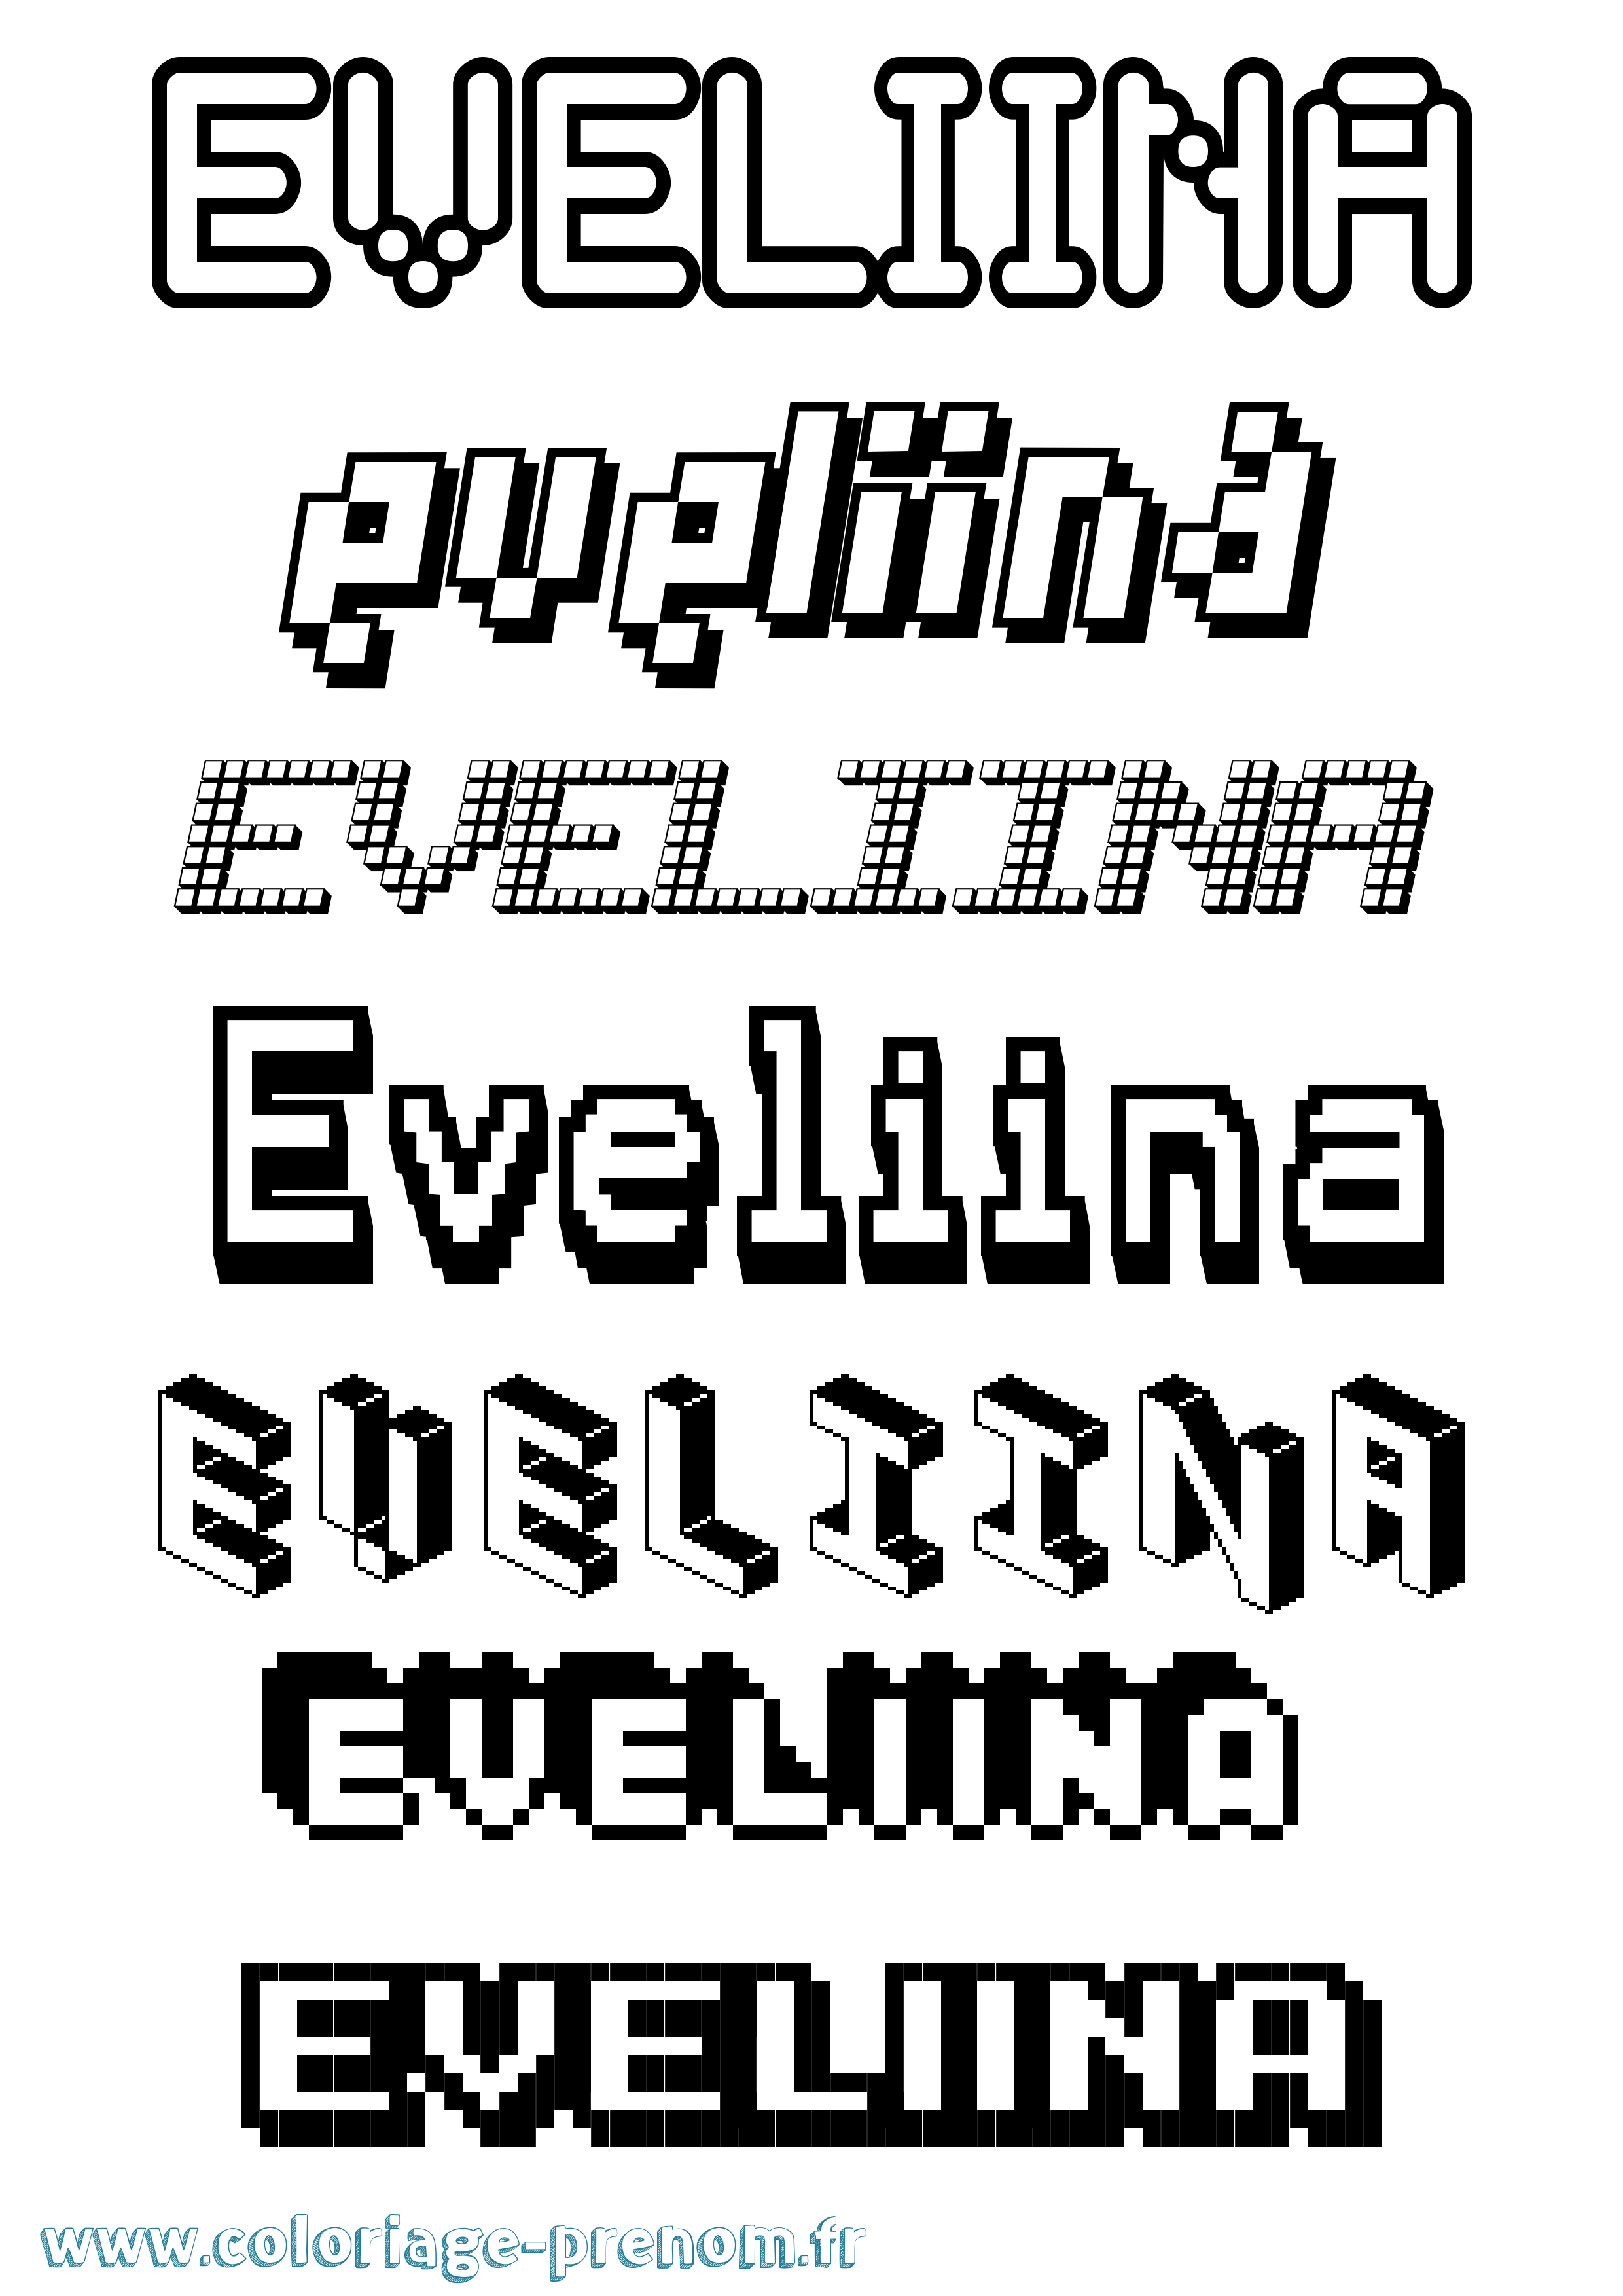 Coloriage prénom Eveliina Pixel